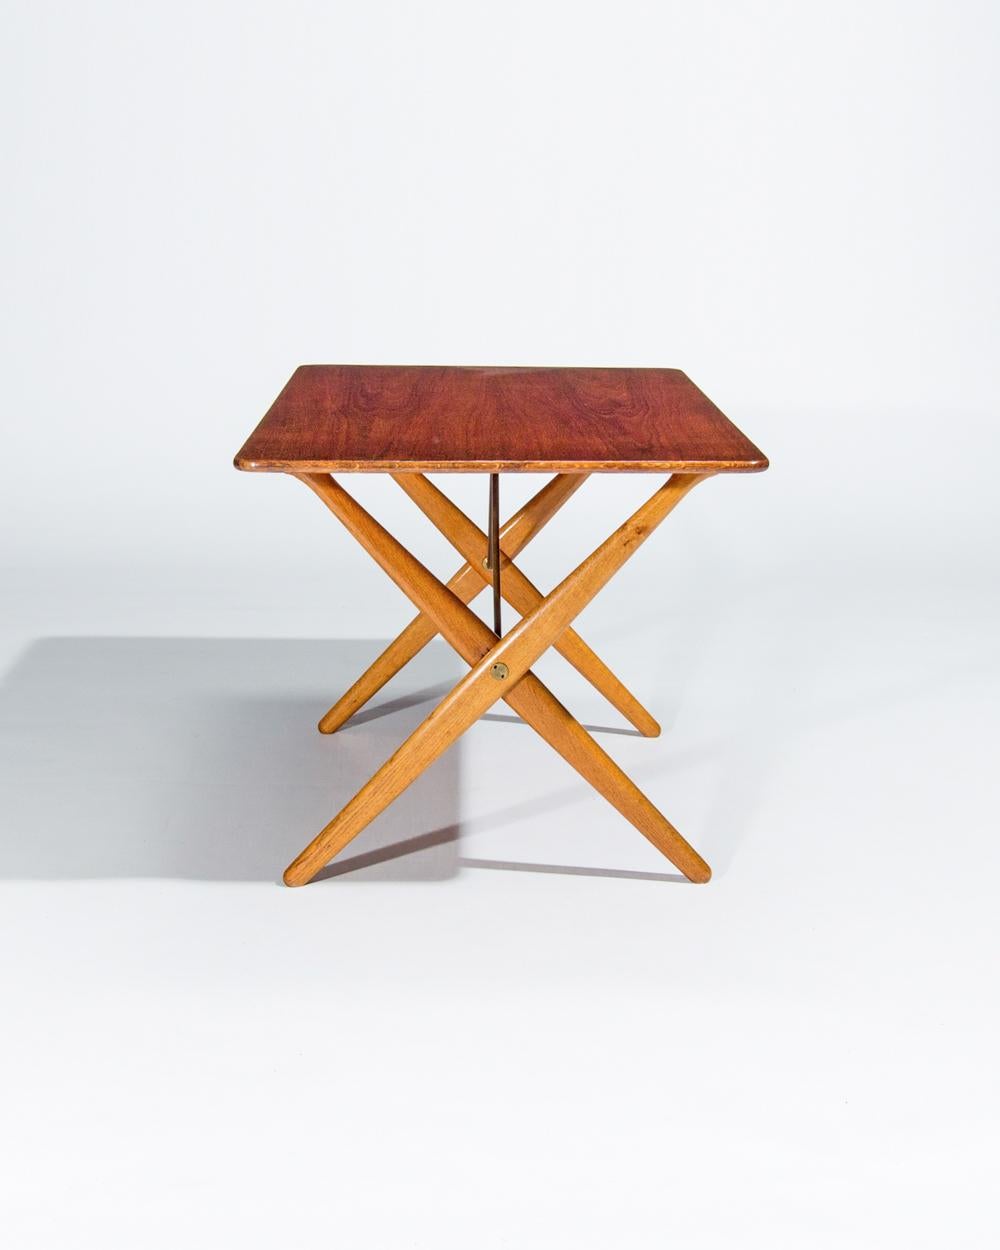 Mid-Century Modern Hans Wegner Coffee Table Teak & Oak for Andreas Tuck, Danish, Midcentury 1950s For Sale